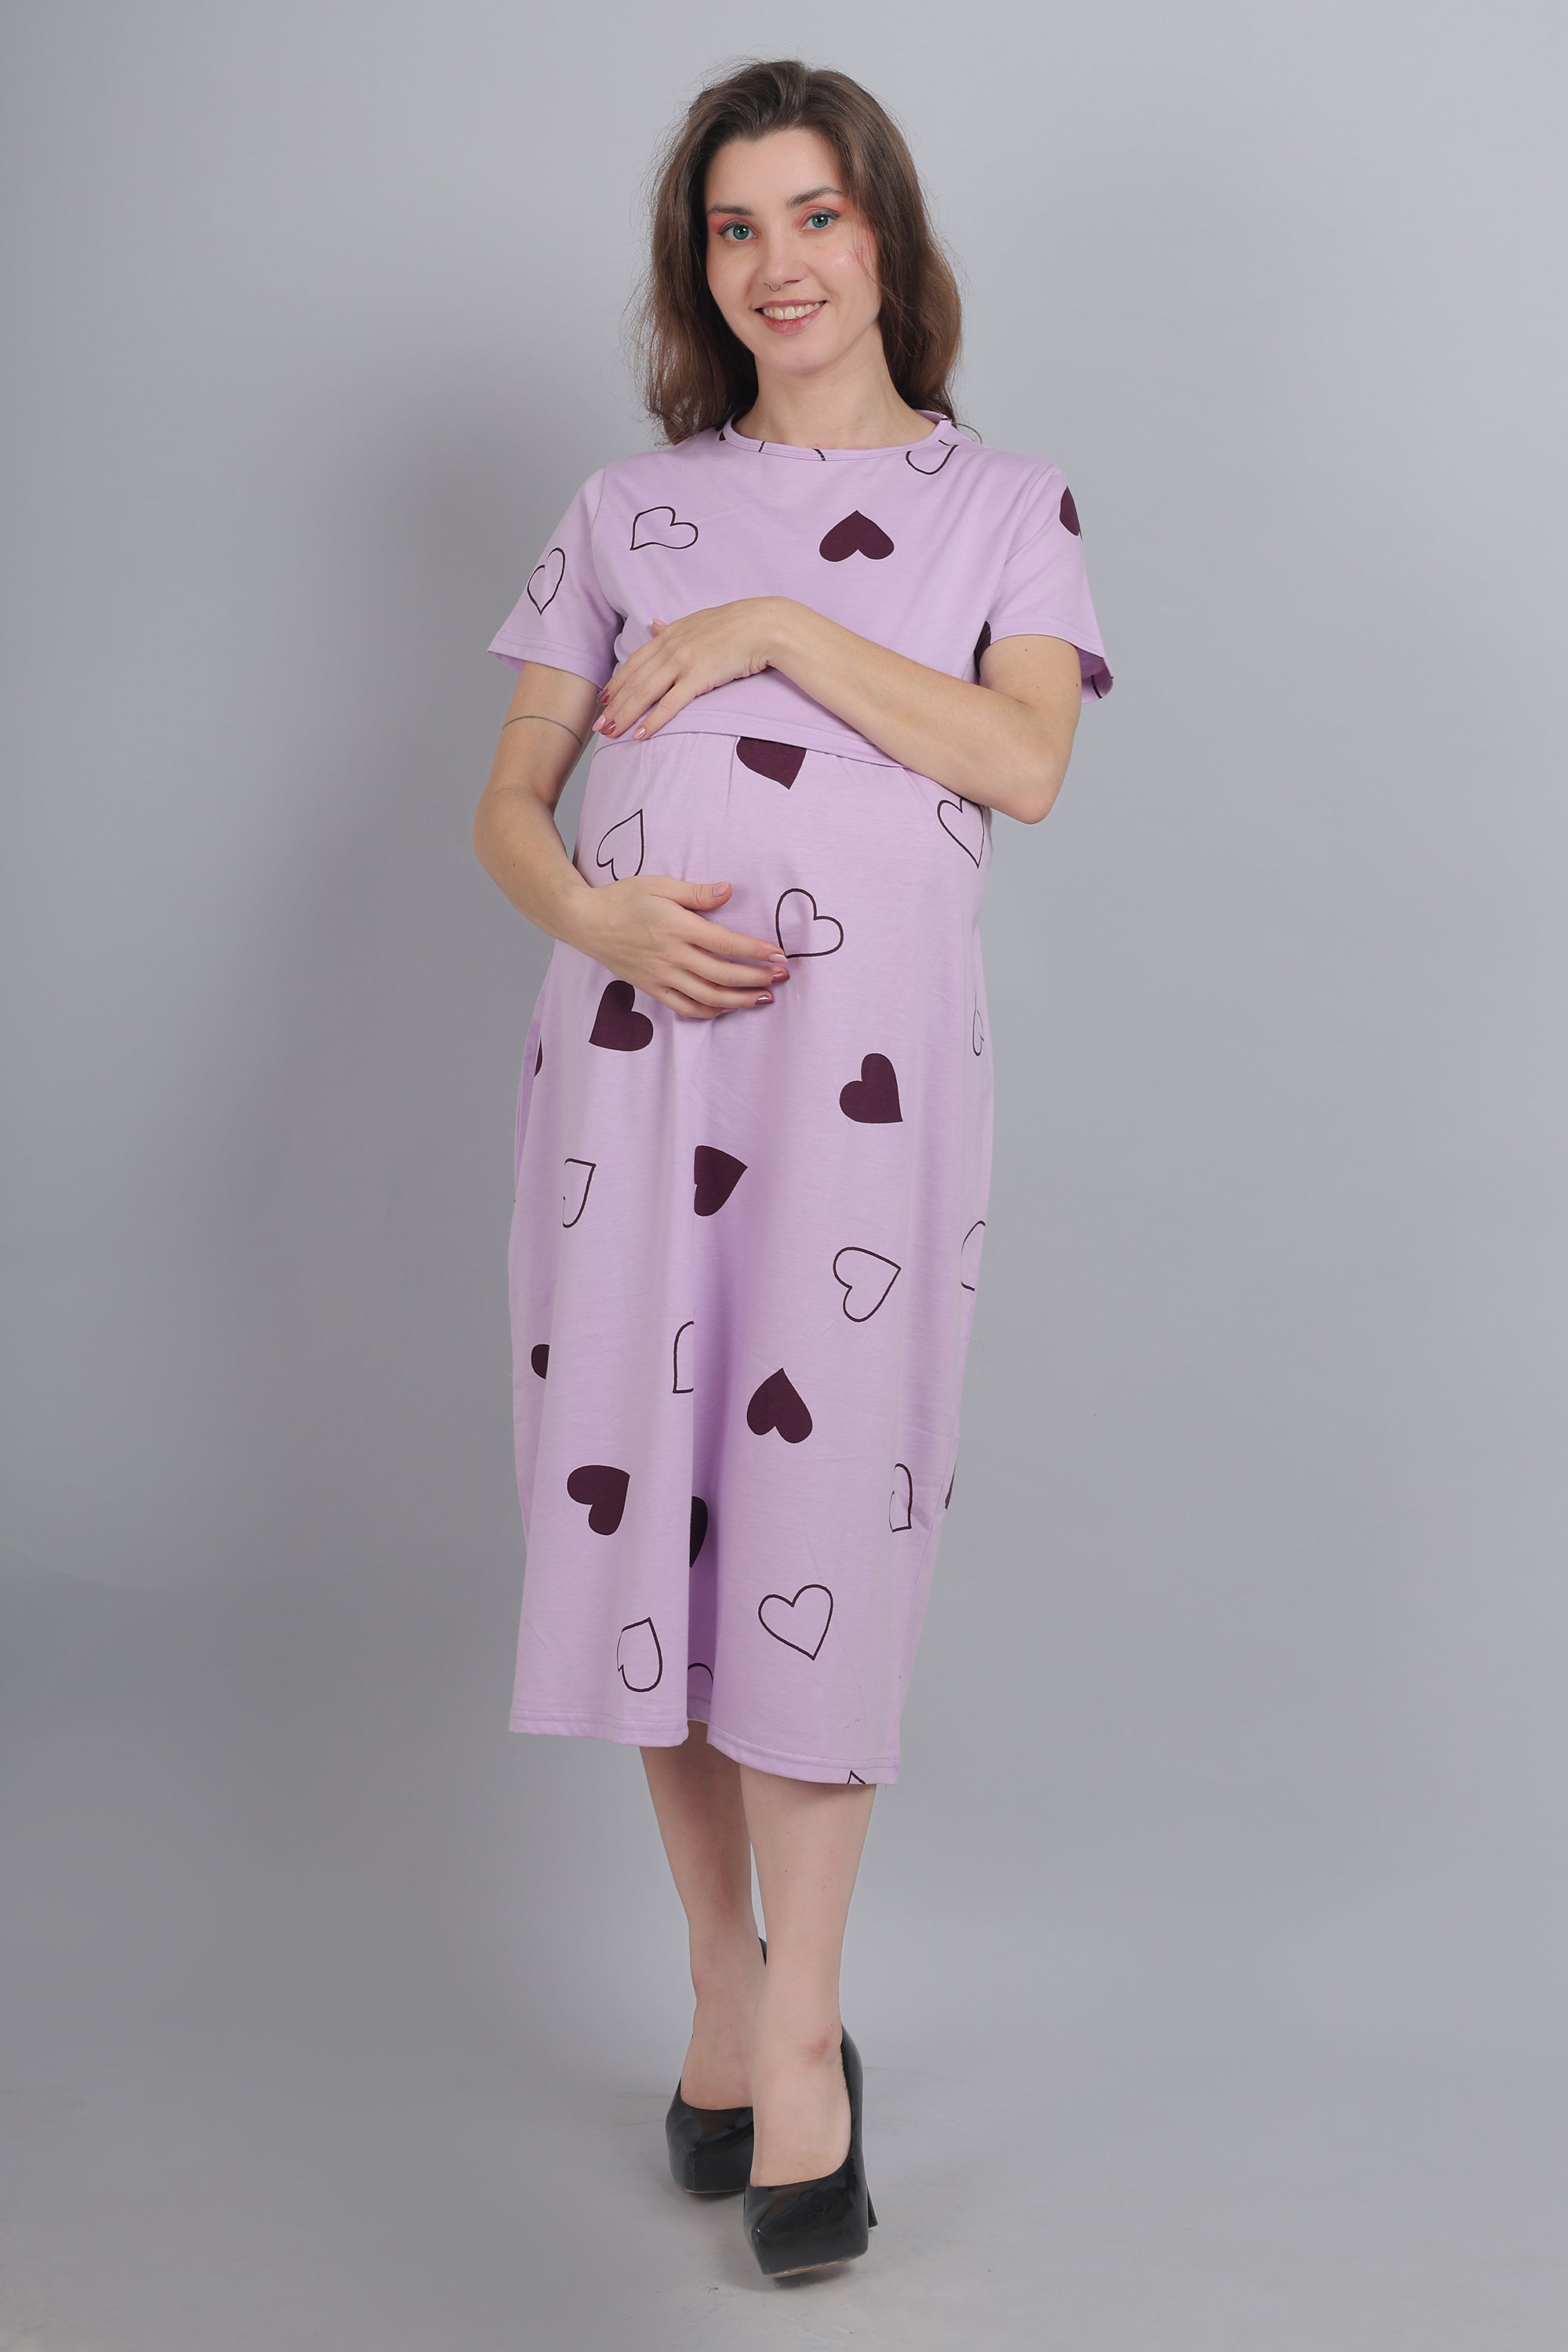 Cotton Maternity Nightwear - Buy Cotton Maternity Nightwear online in India